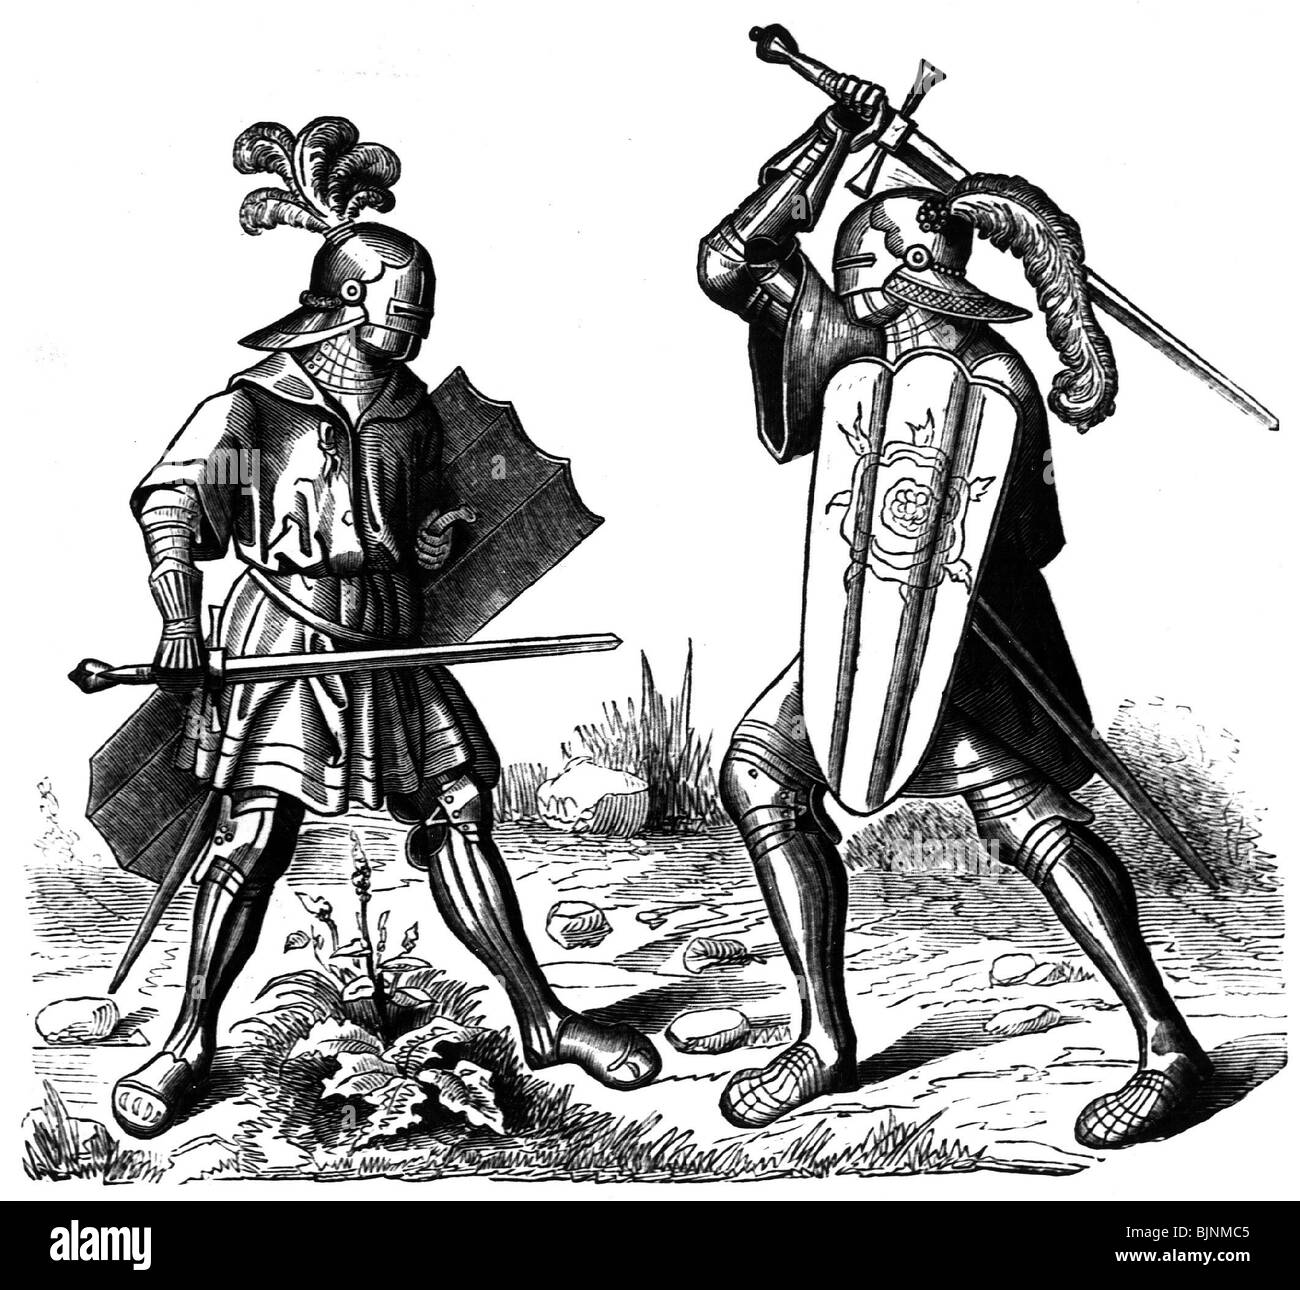 Militari, Medioevo, fighting knights, incisione su legno dopo Hans Burgkmair (1473 - 1531), il Trionfo di Massimiliano, Germania, XVI Foto Stock